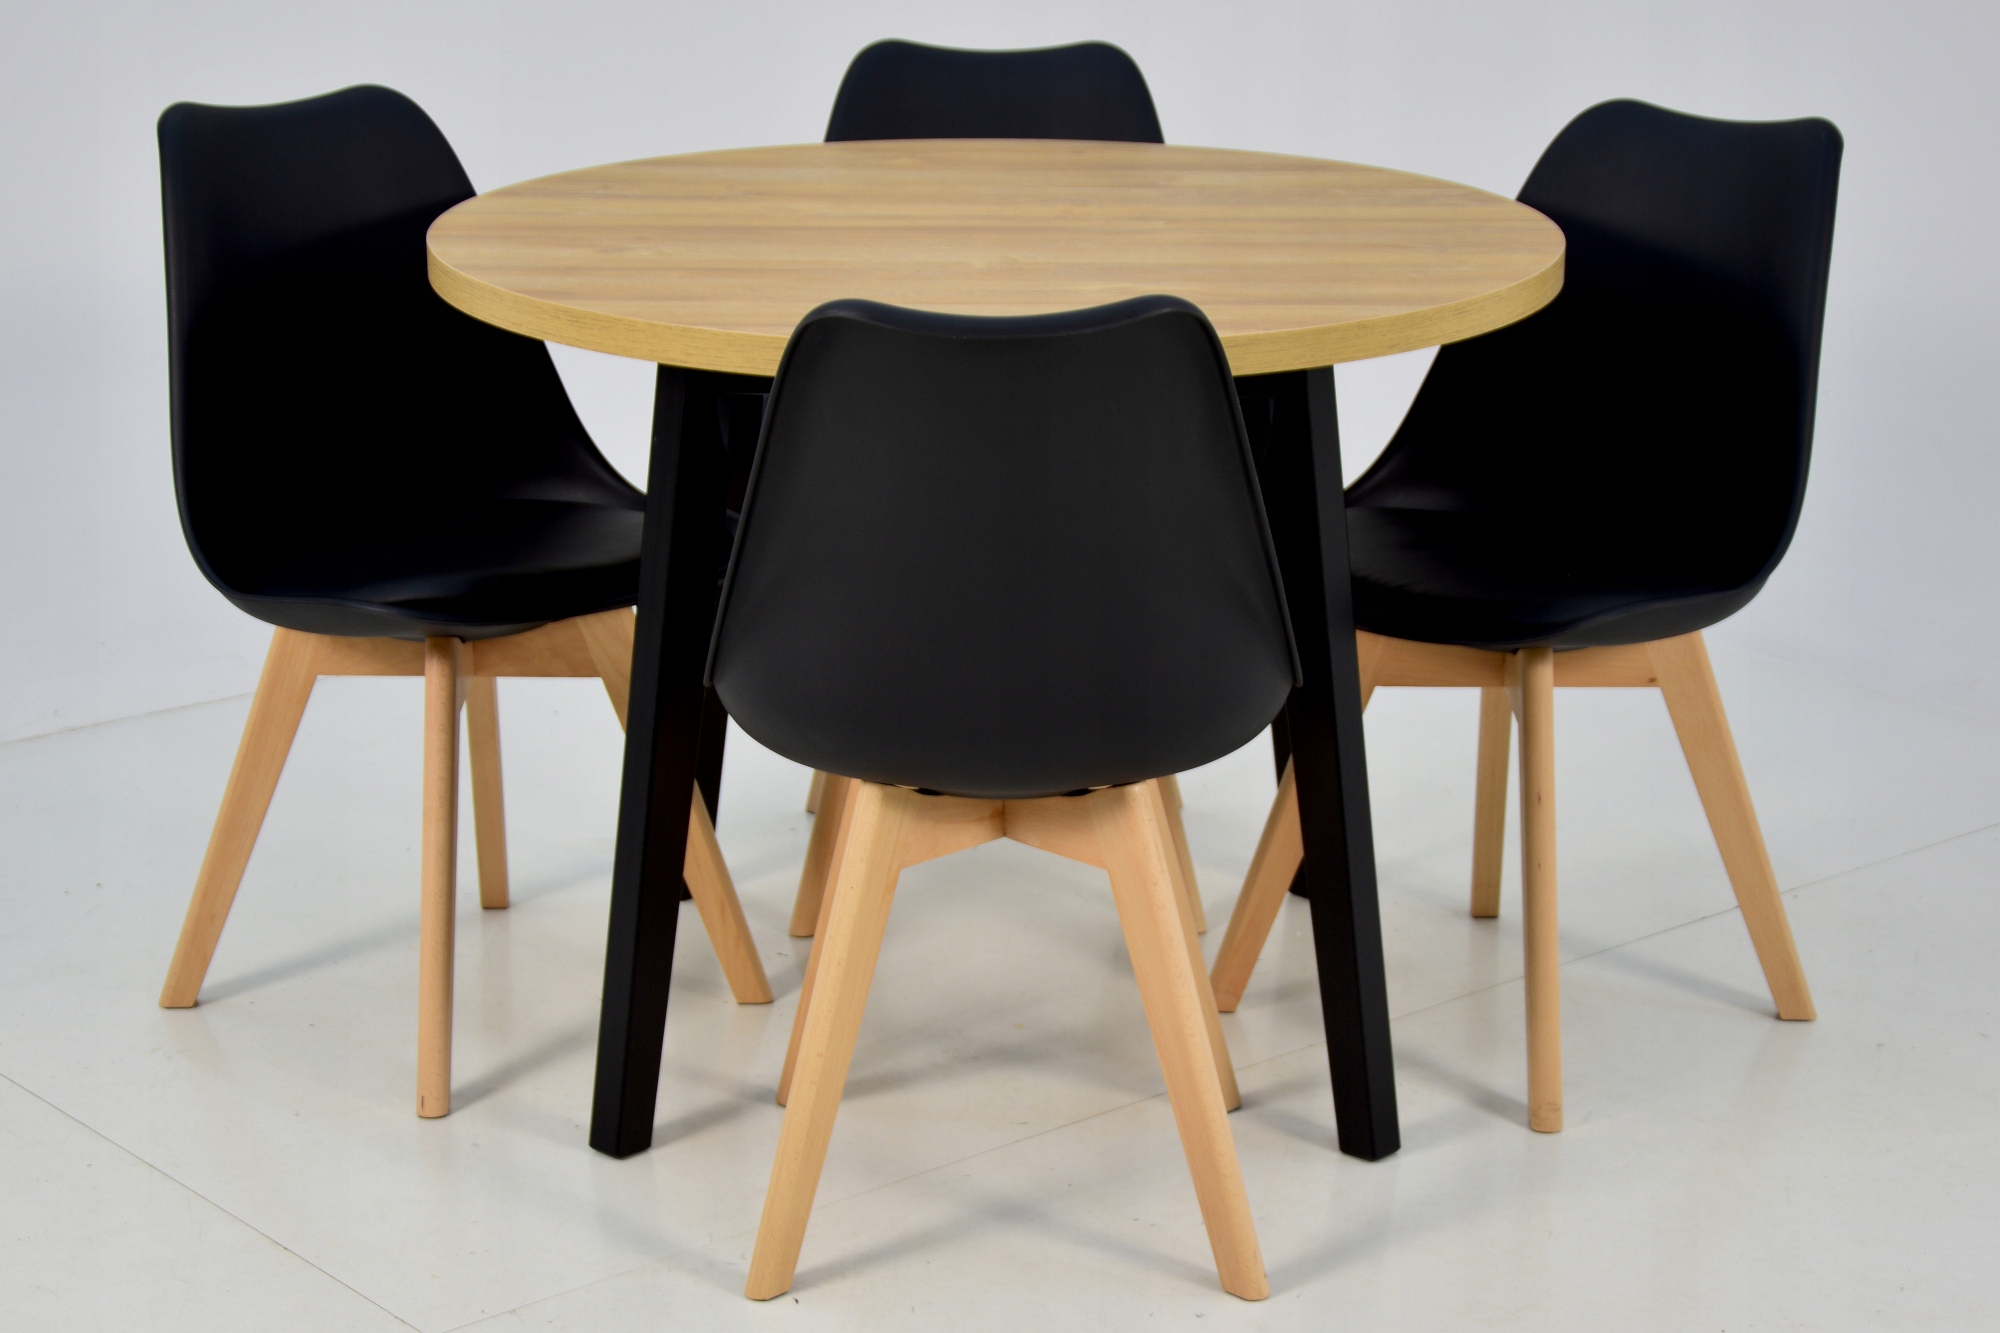 4 скандинавских стула + круглый стол 100 см. Высота стола 75 см.